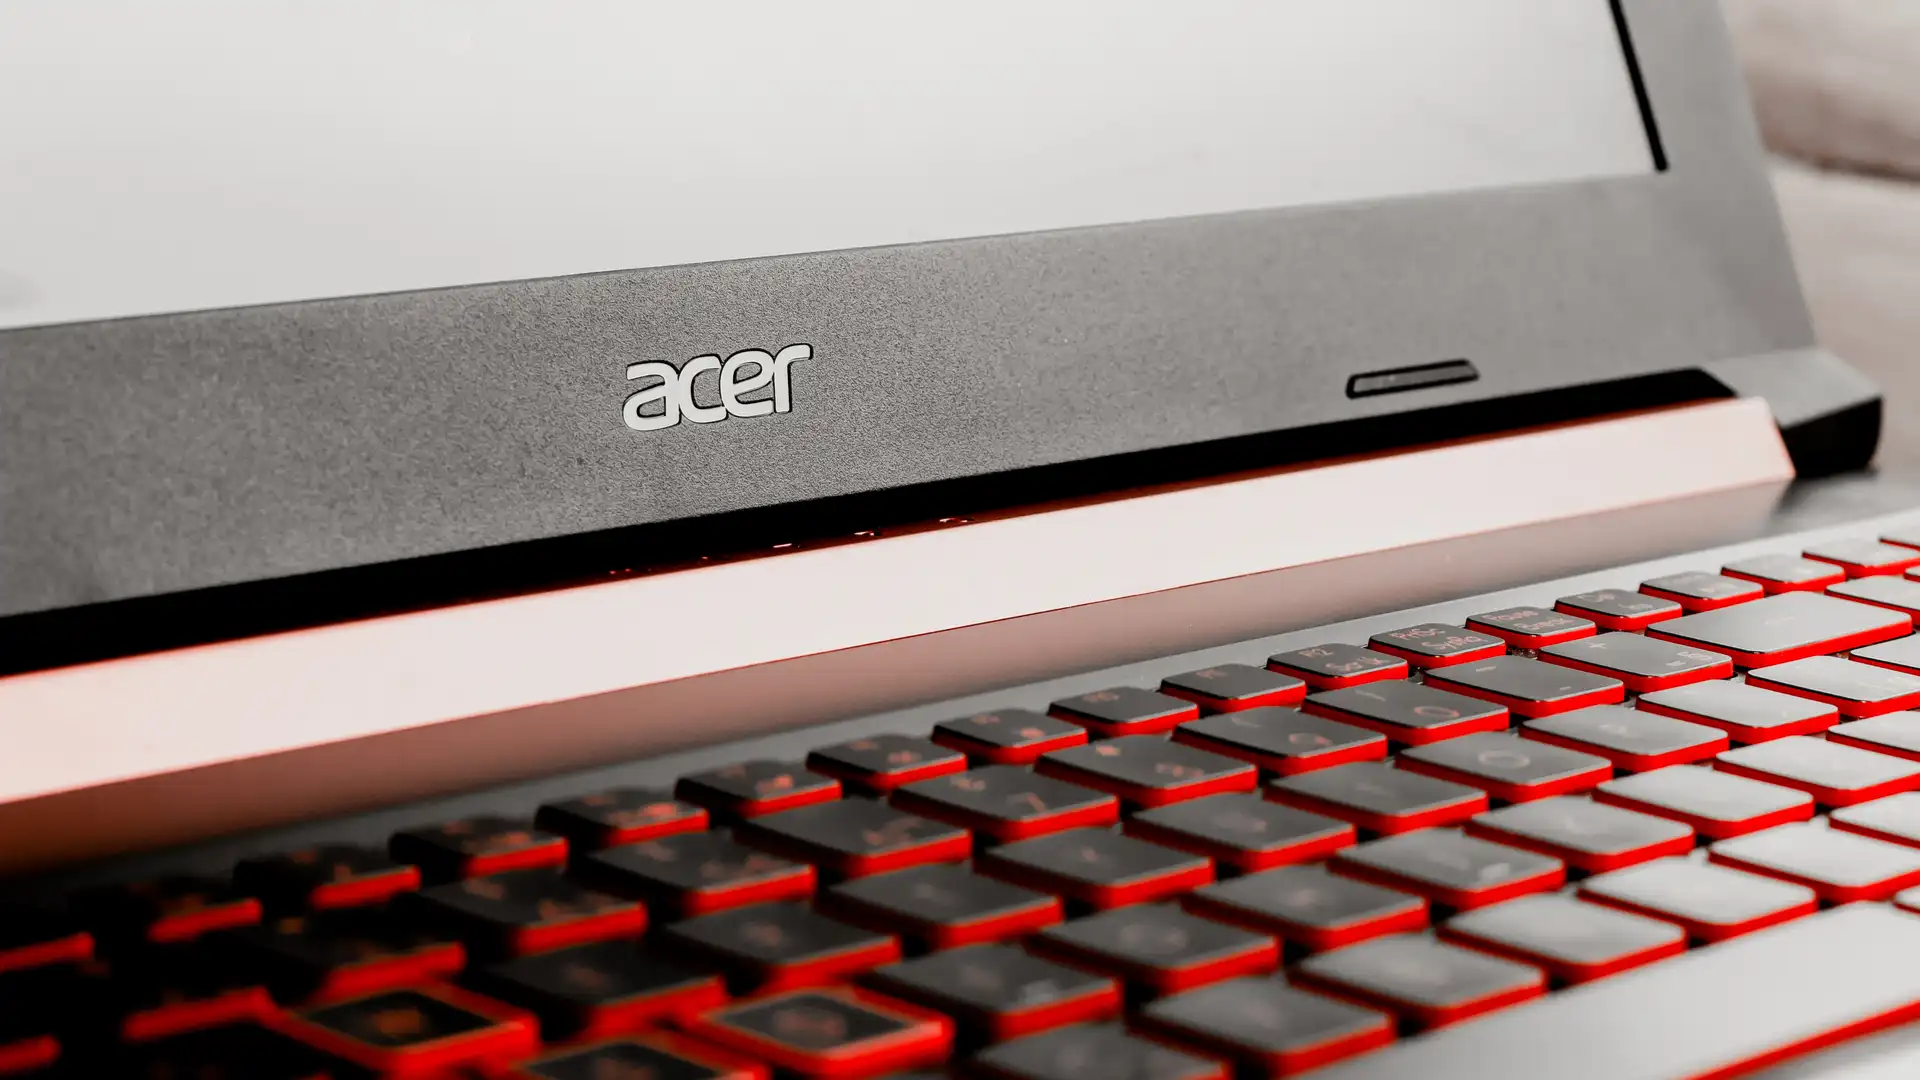 Modelo Acer mostra qual é a melhor marca de notebook